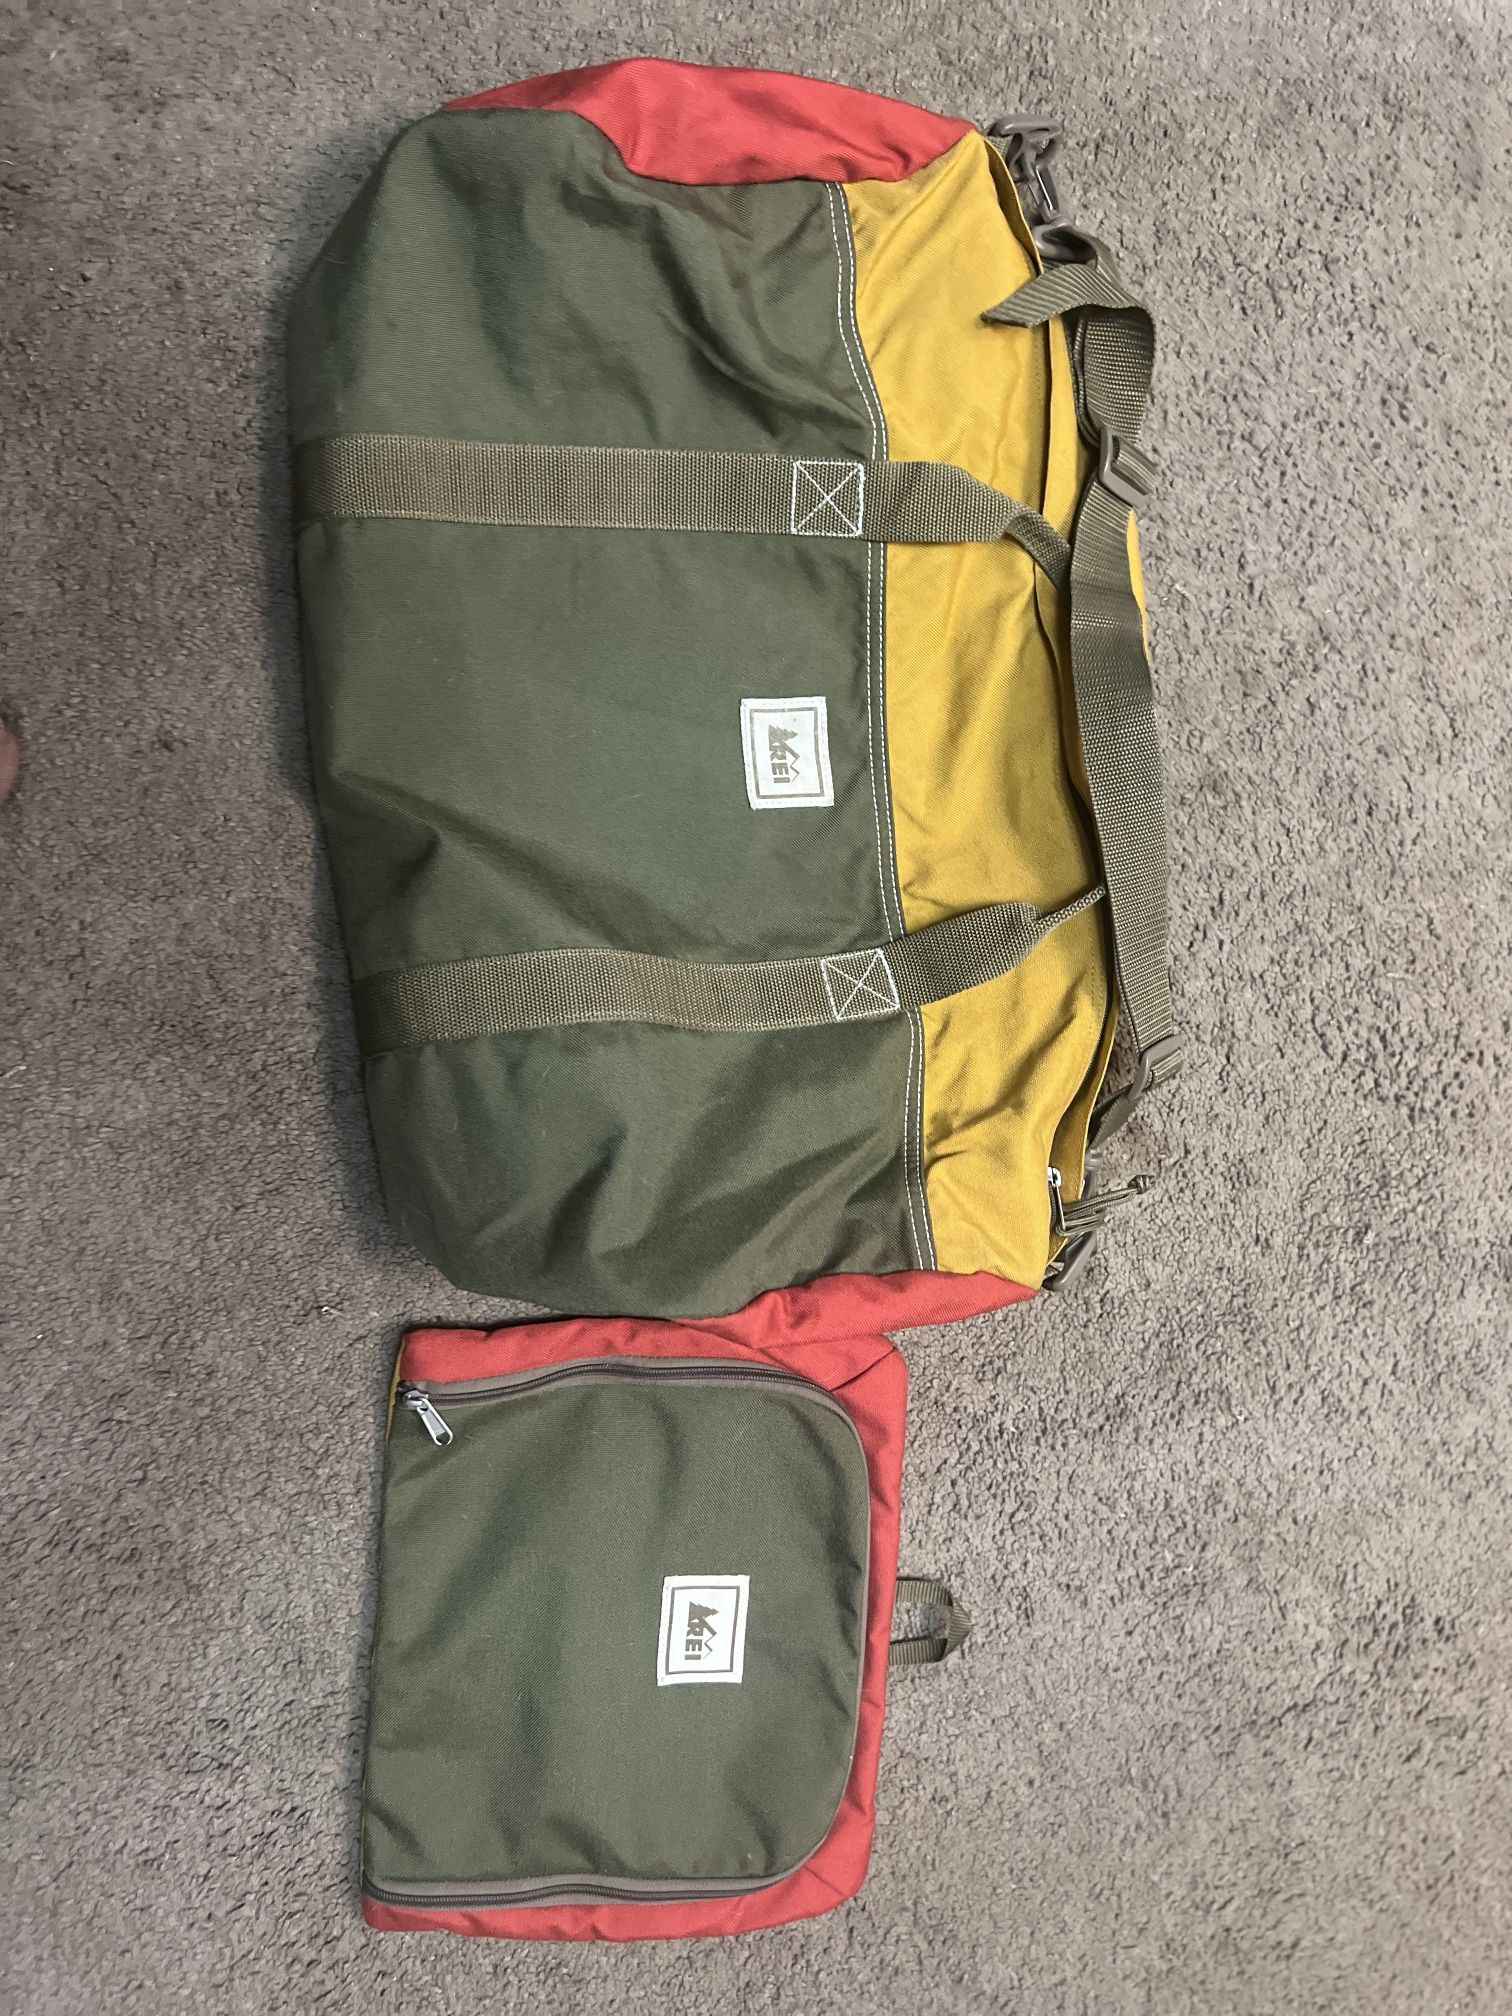 REI Co-op Travel Duffel Bags | REI Co-op Shop for REI Co-op Travel Duffel Bags